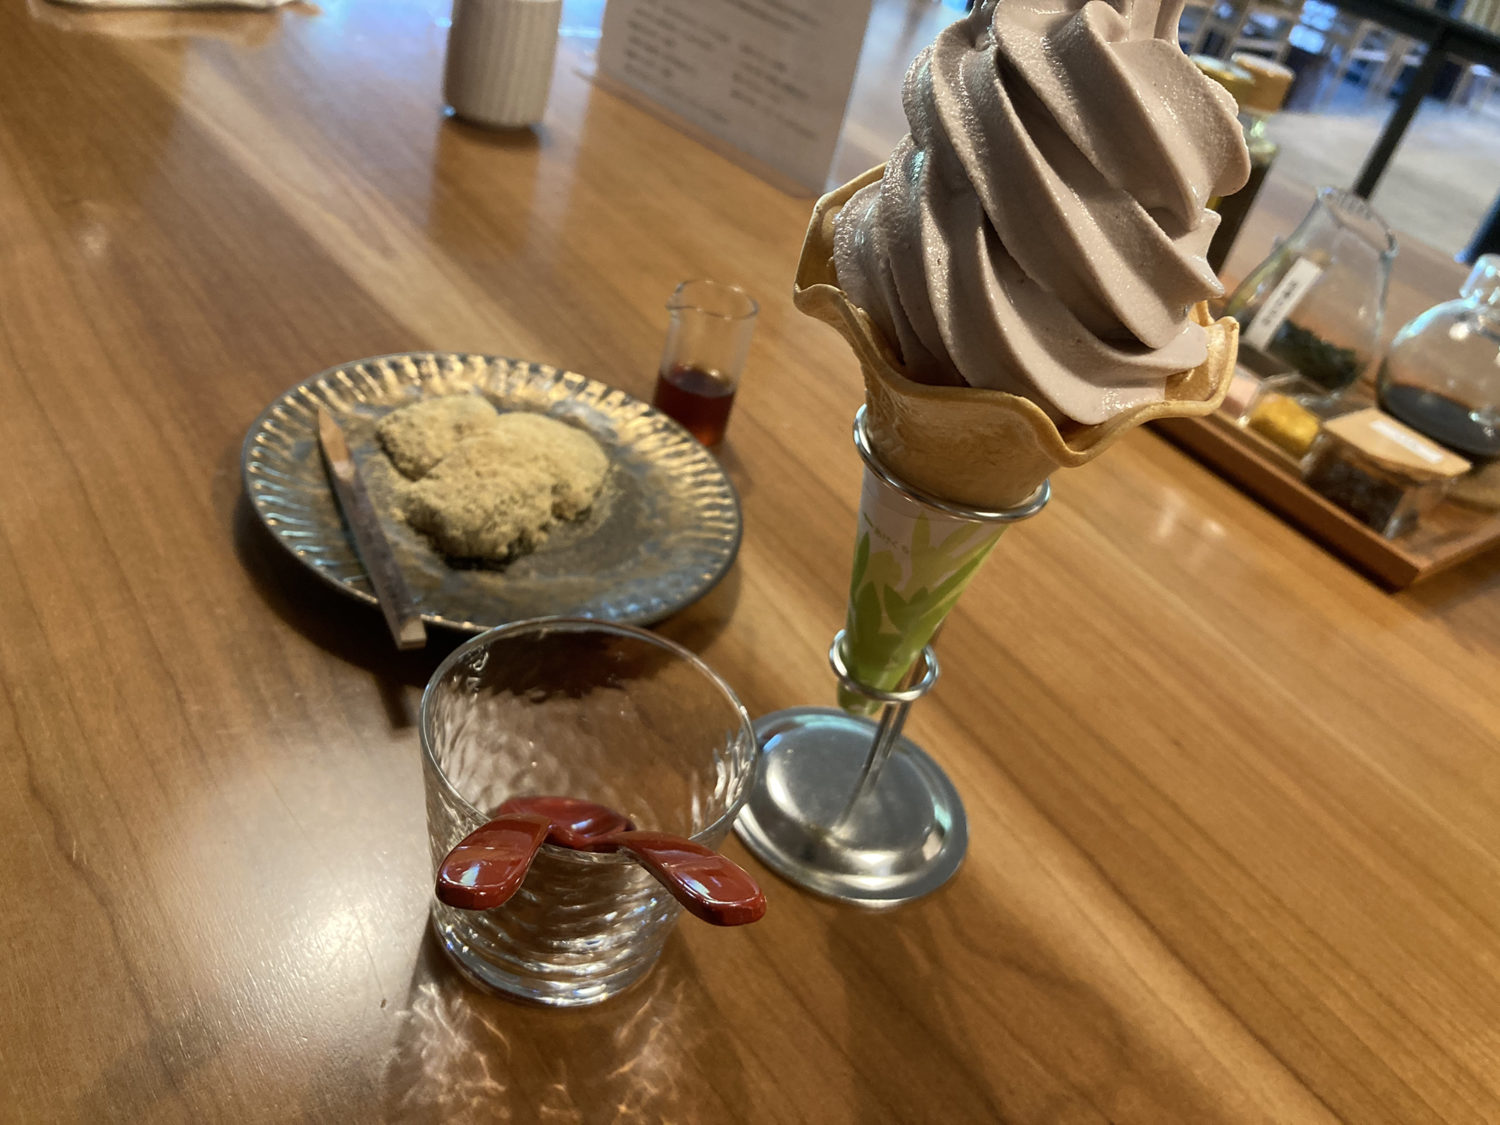 工房レストラン「wakuden MORI」
れんこん餅と桑の実ソフトクリーム